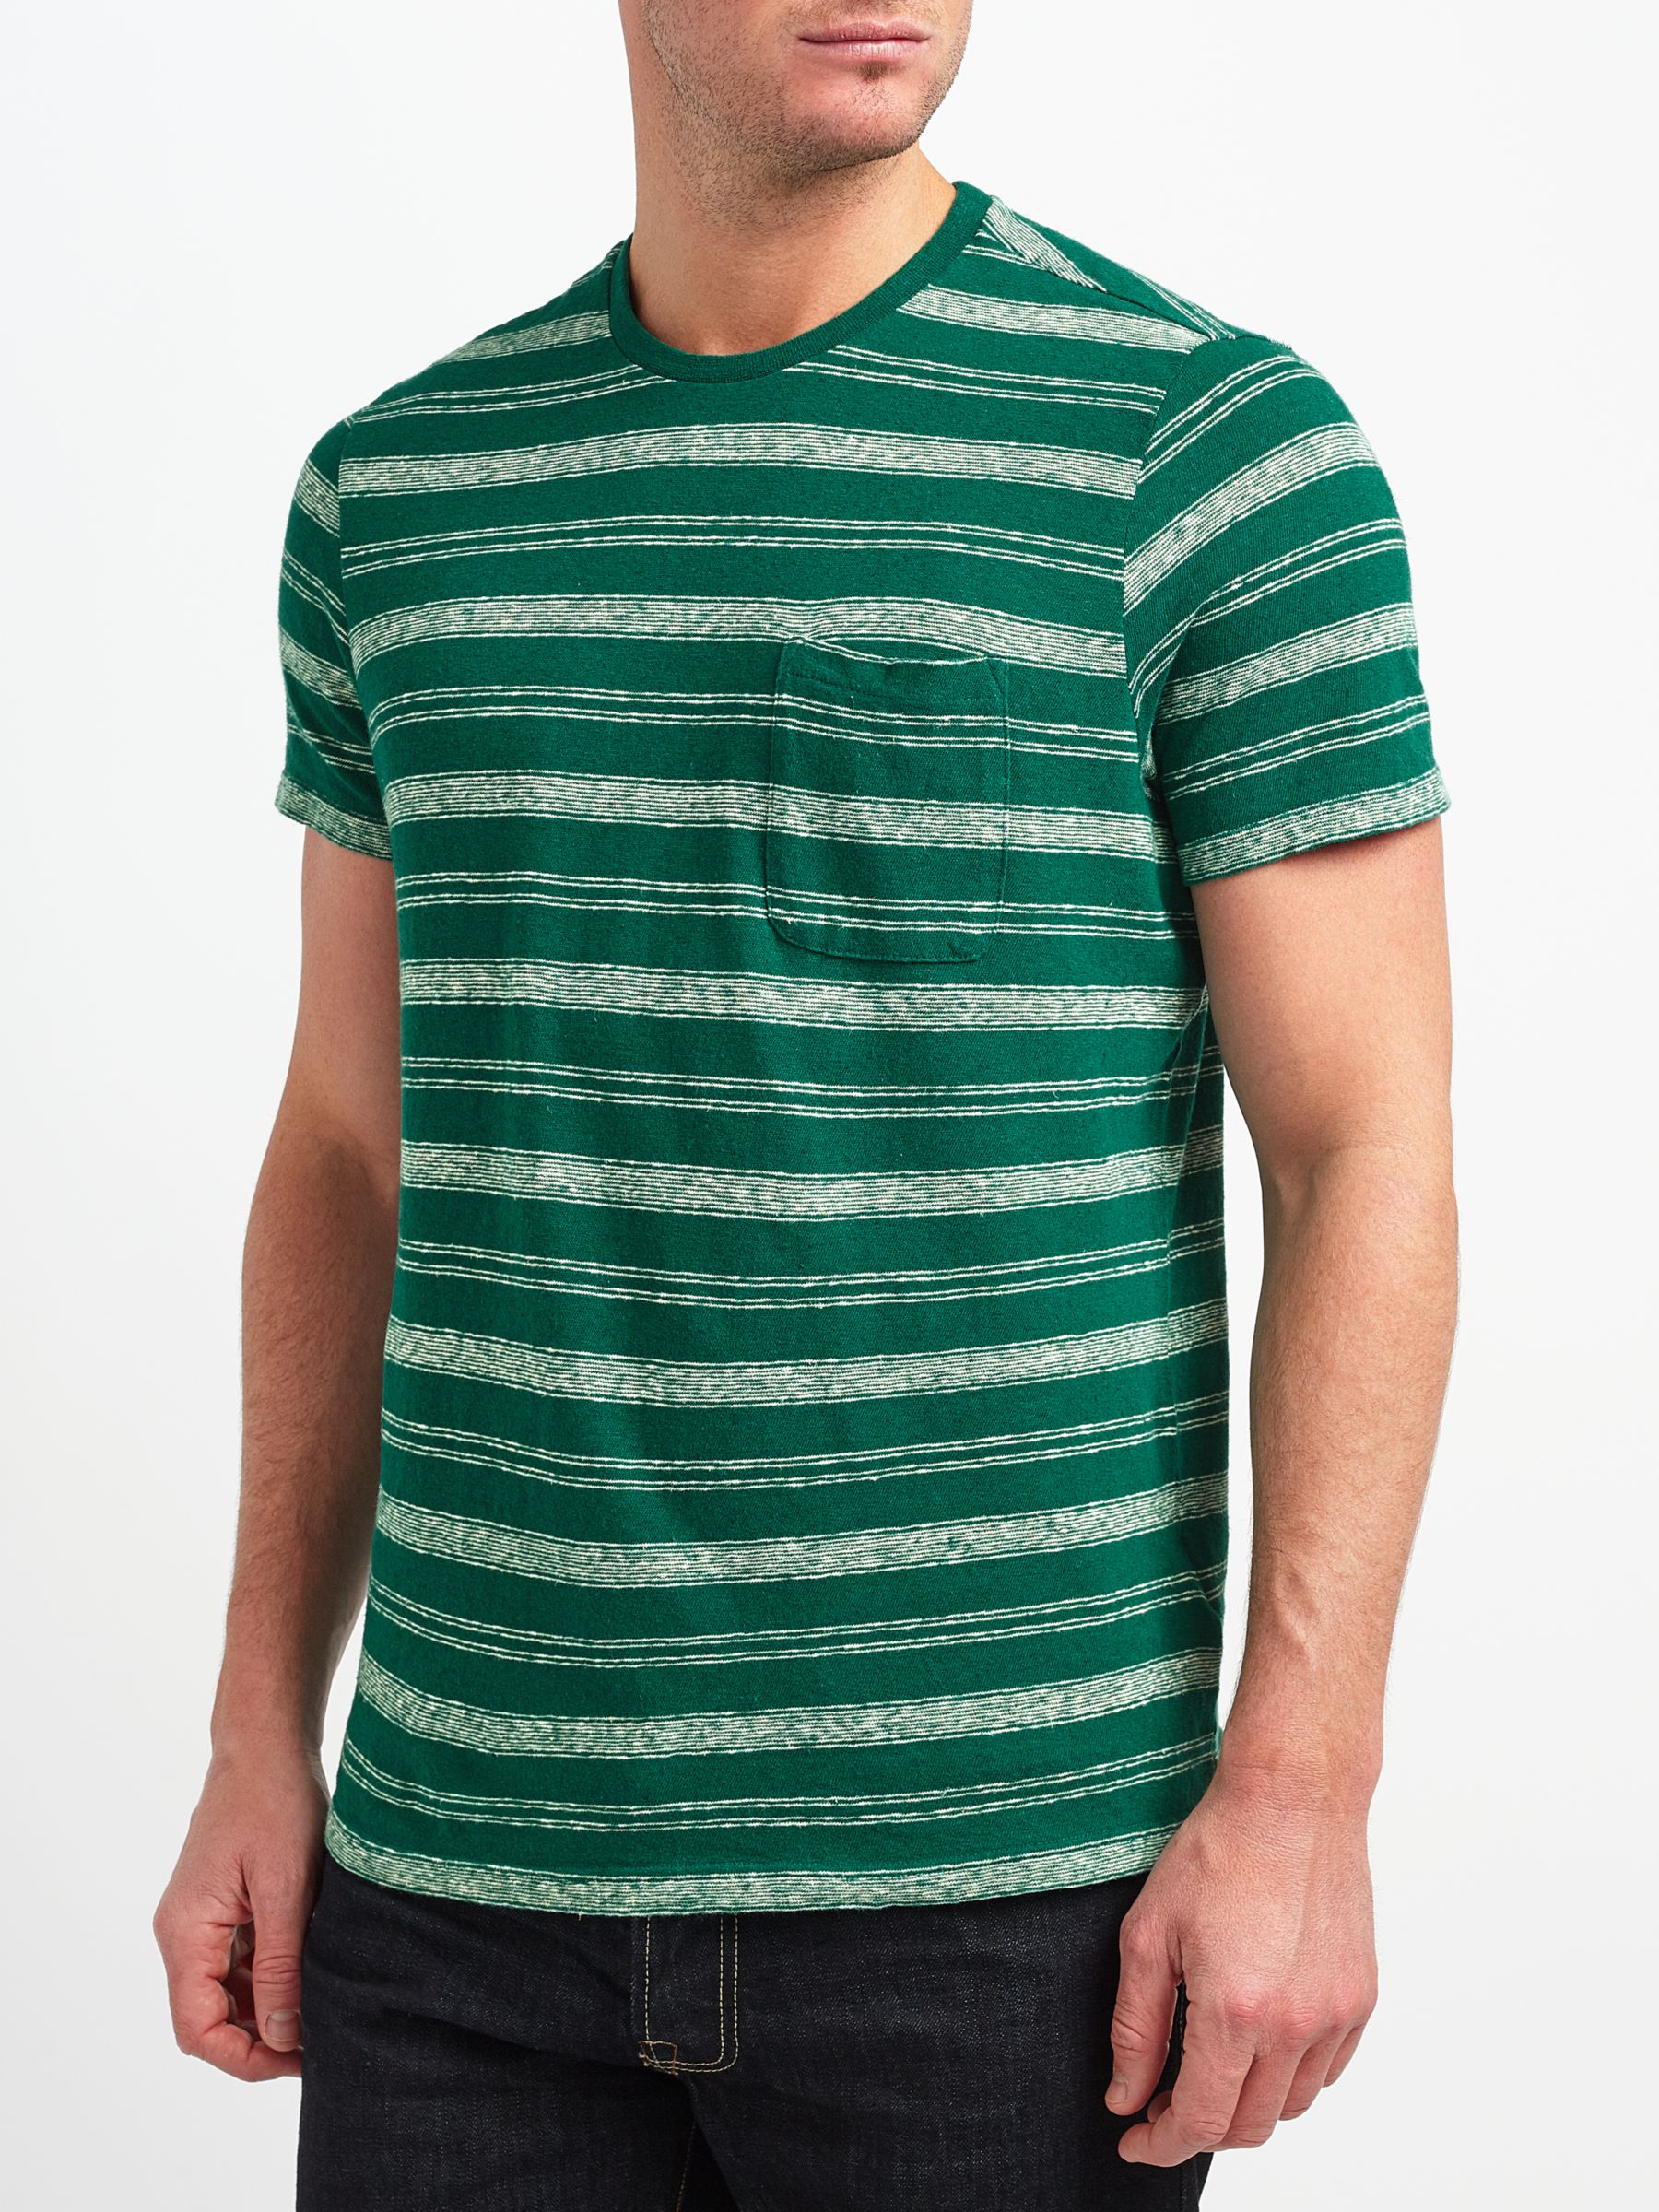 JOHN LEWIS & Co. Cotton Linen Stripe T-Shirt, Green, L